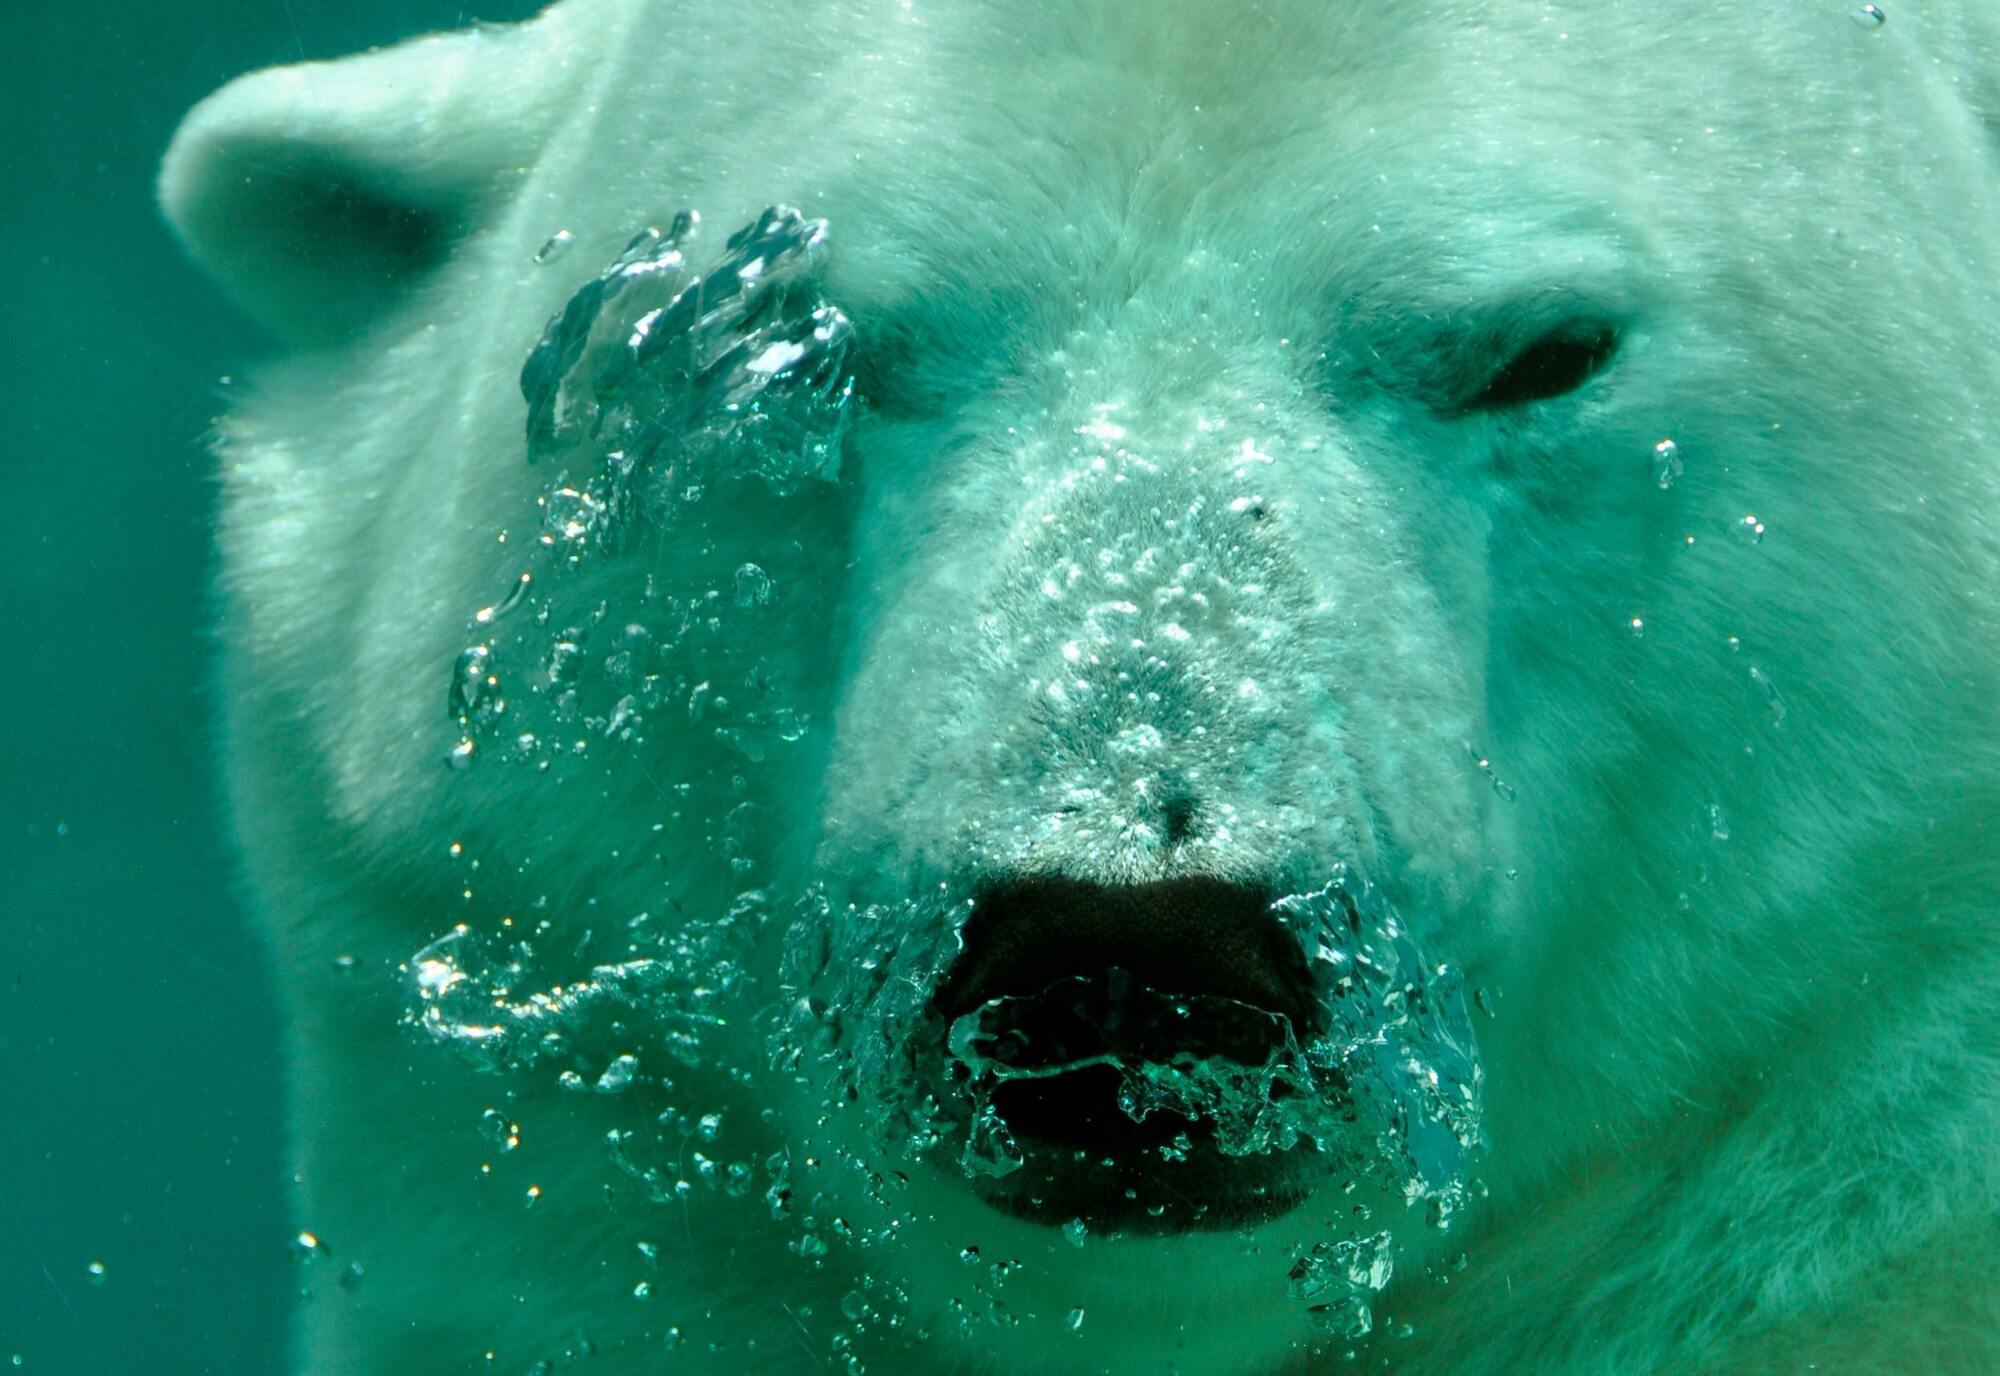 Щорічно 27 лютого в світі відзначається Міжнародний день полярного ведмедя